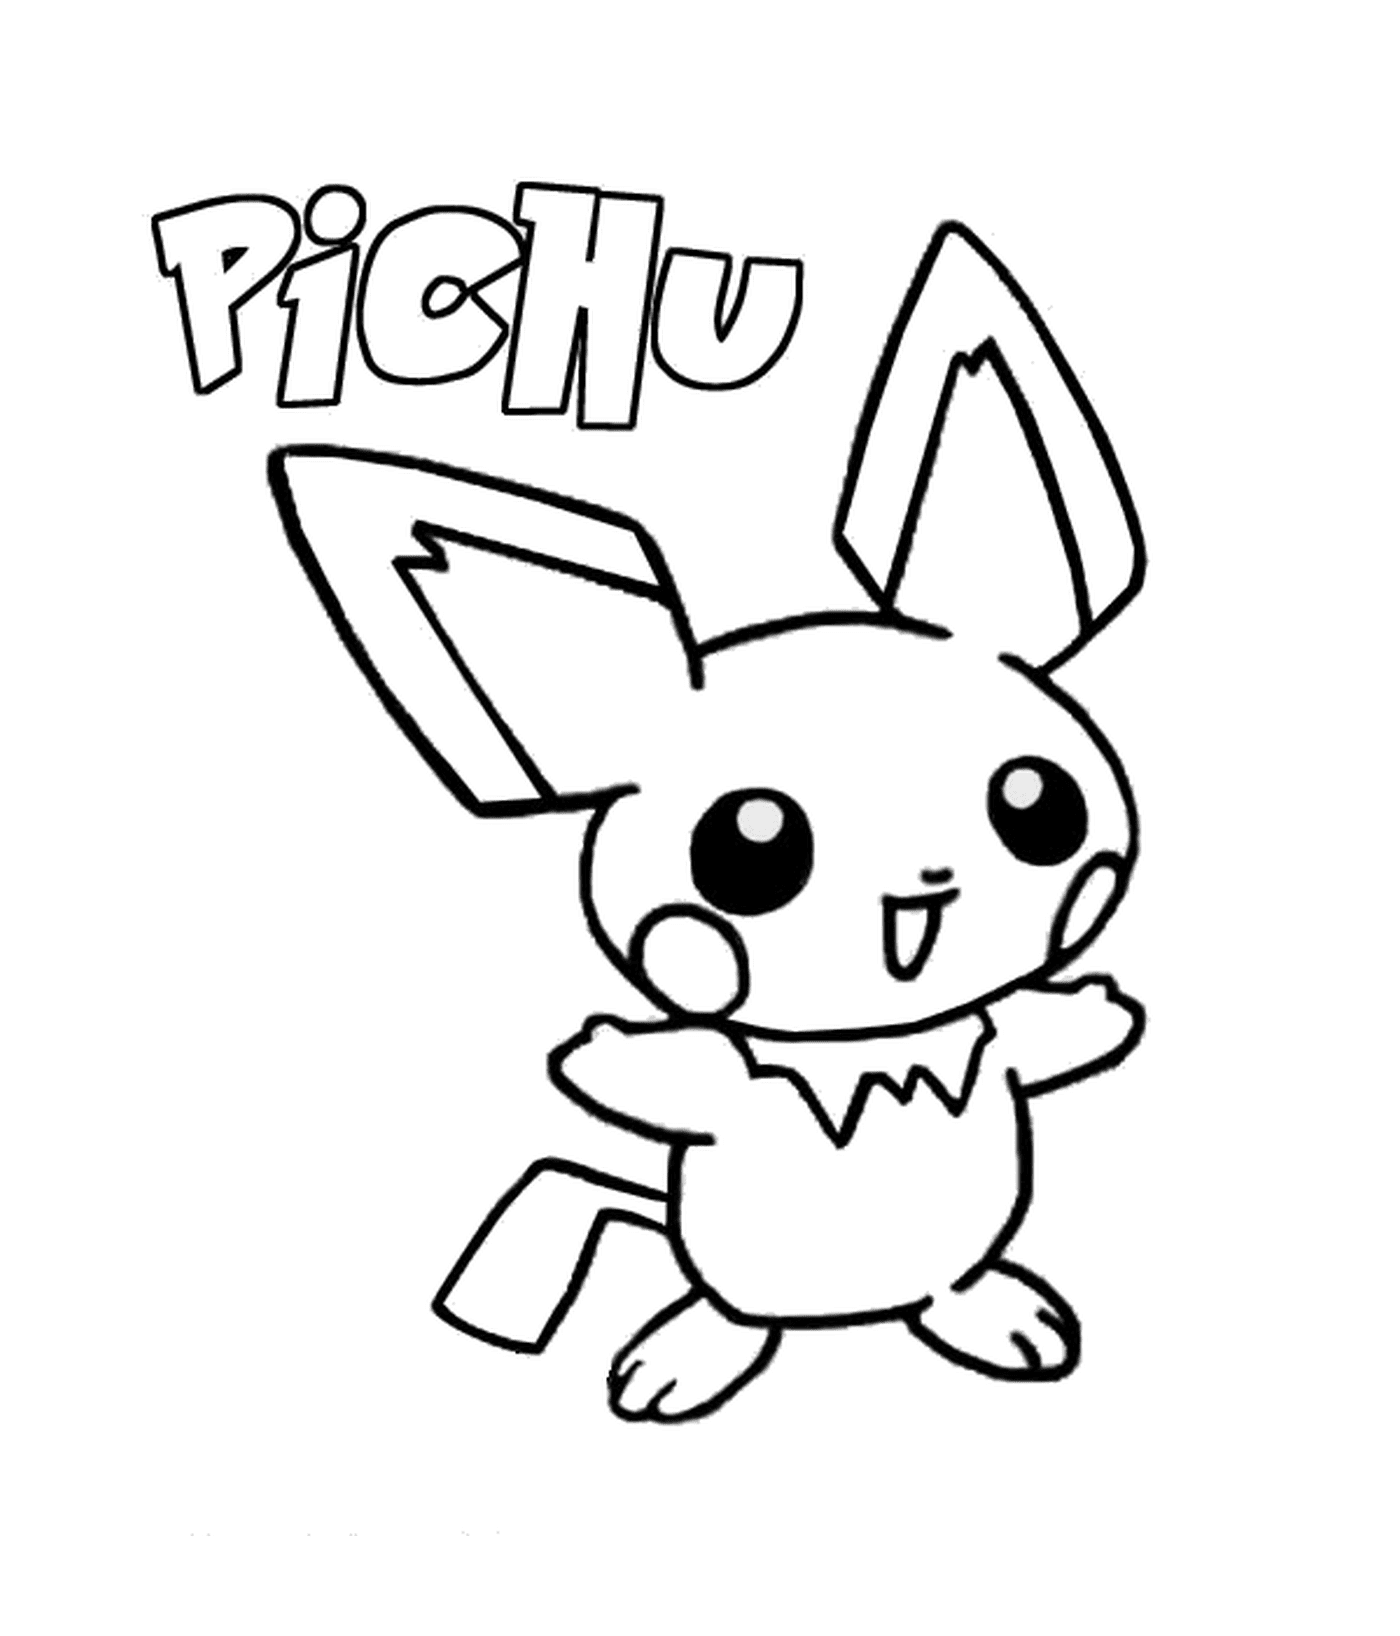  Pichu : Baby-Version von Pikachu 